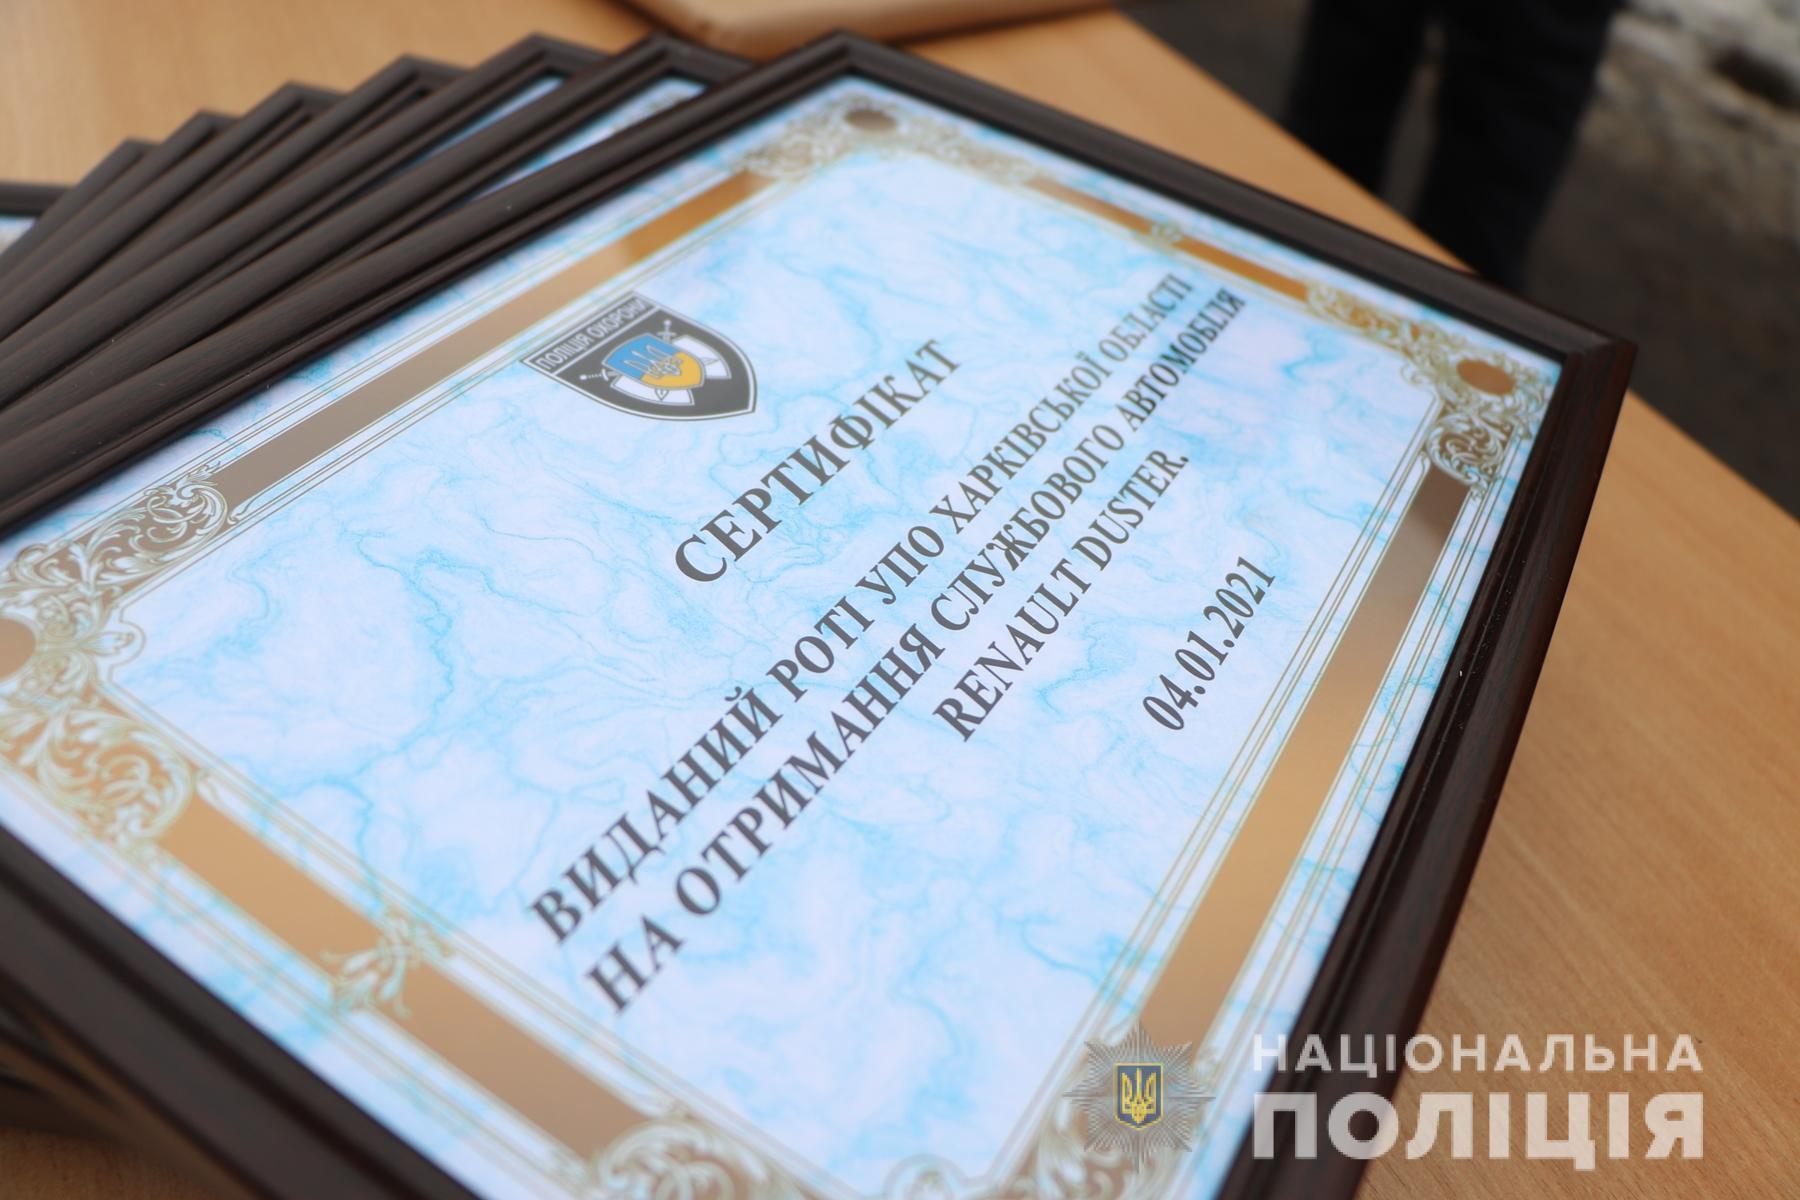 Поліцейські охорони Харкова отримали нові службові автомобілі